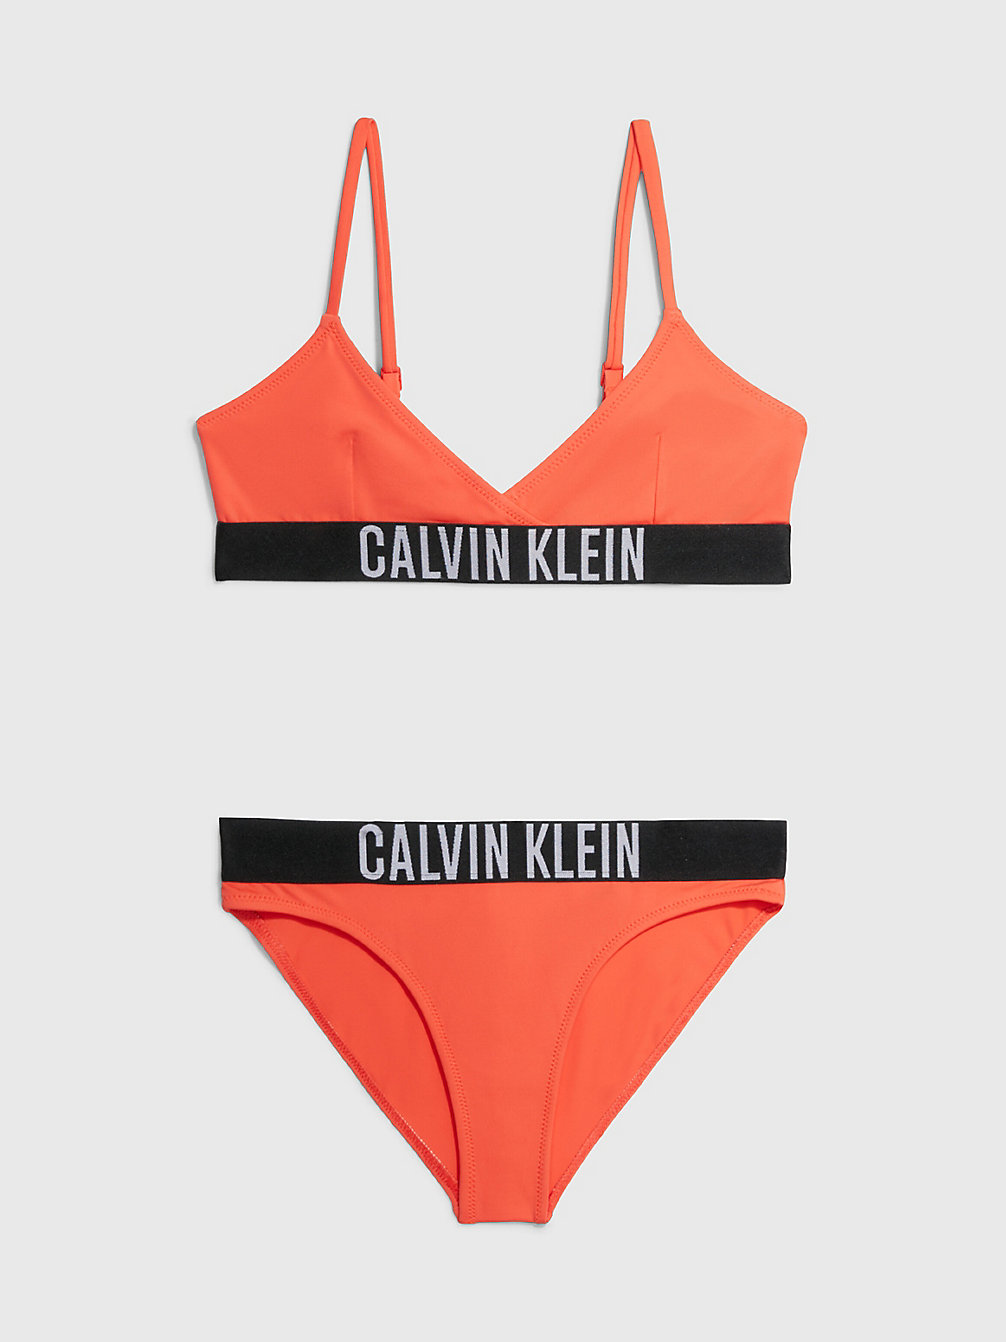 BRIGHT VERMILLION Girls Triangle Bikini Set - Intense Power undefined girls Calvin Klein